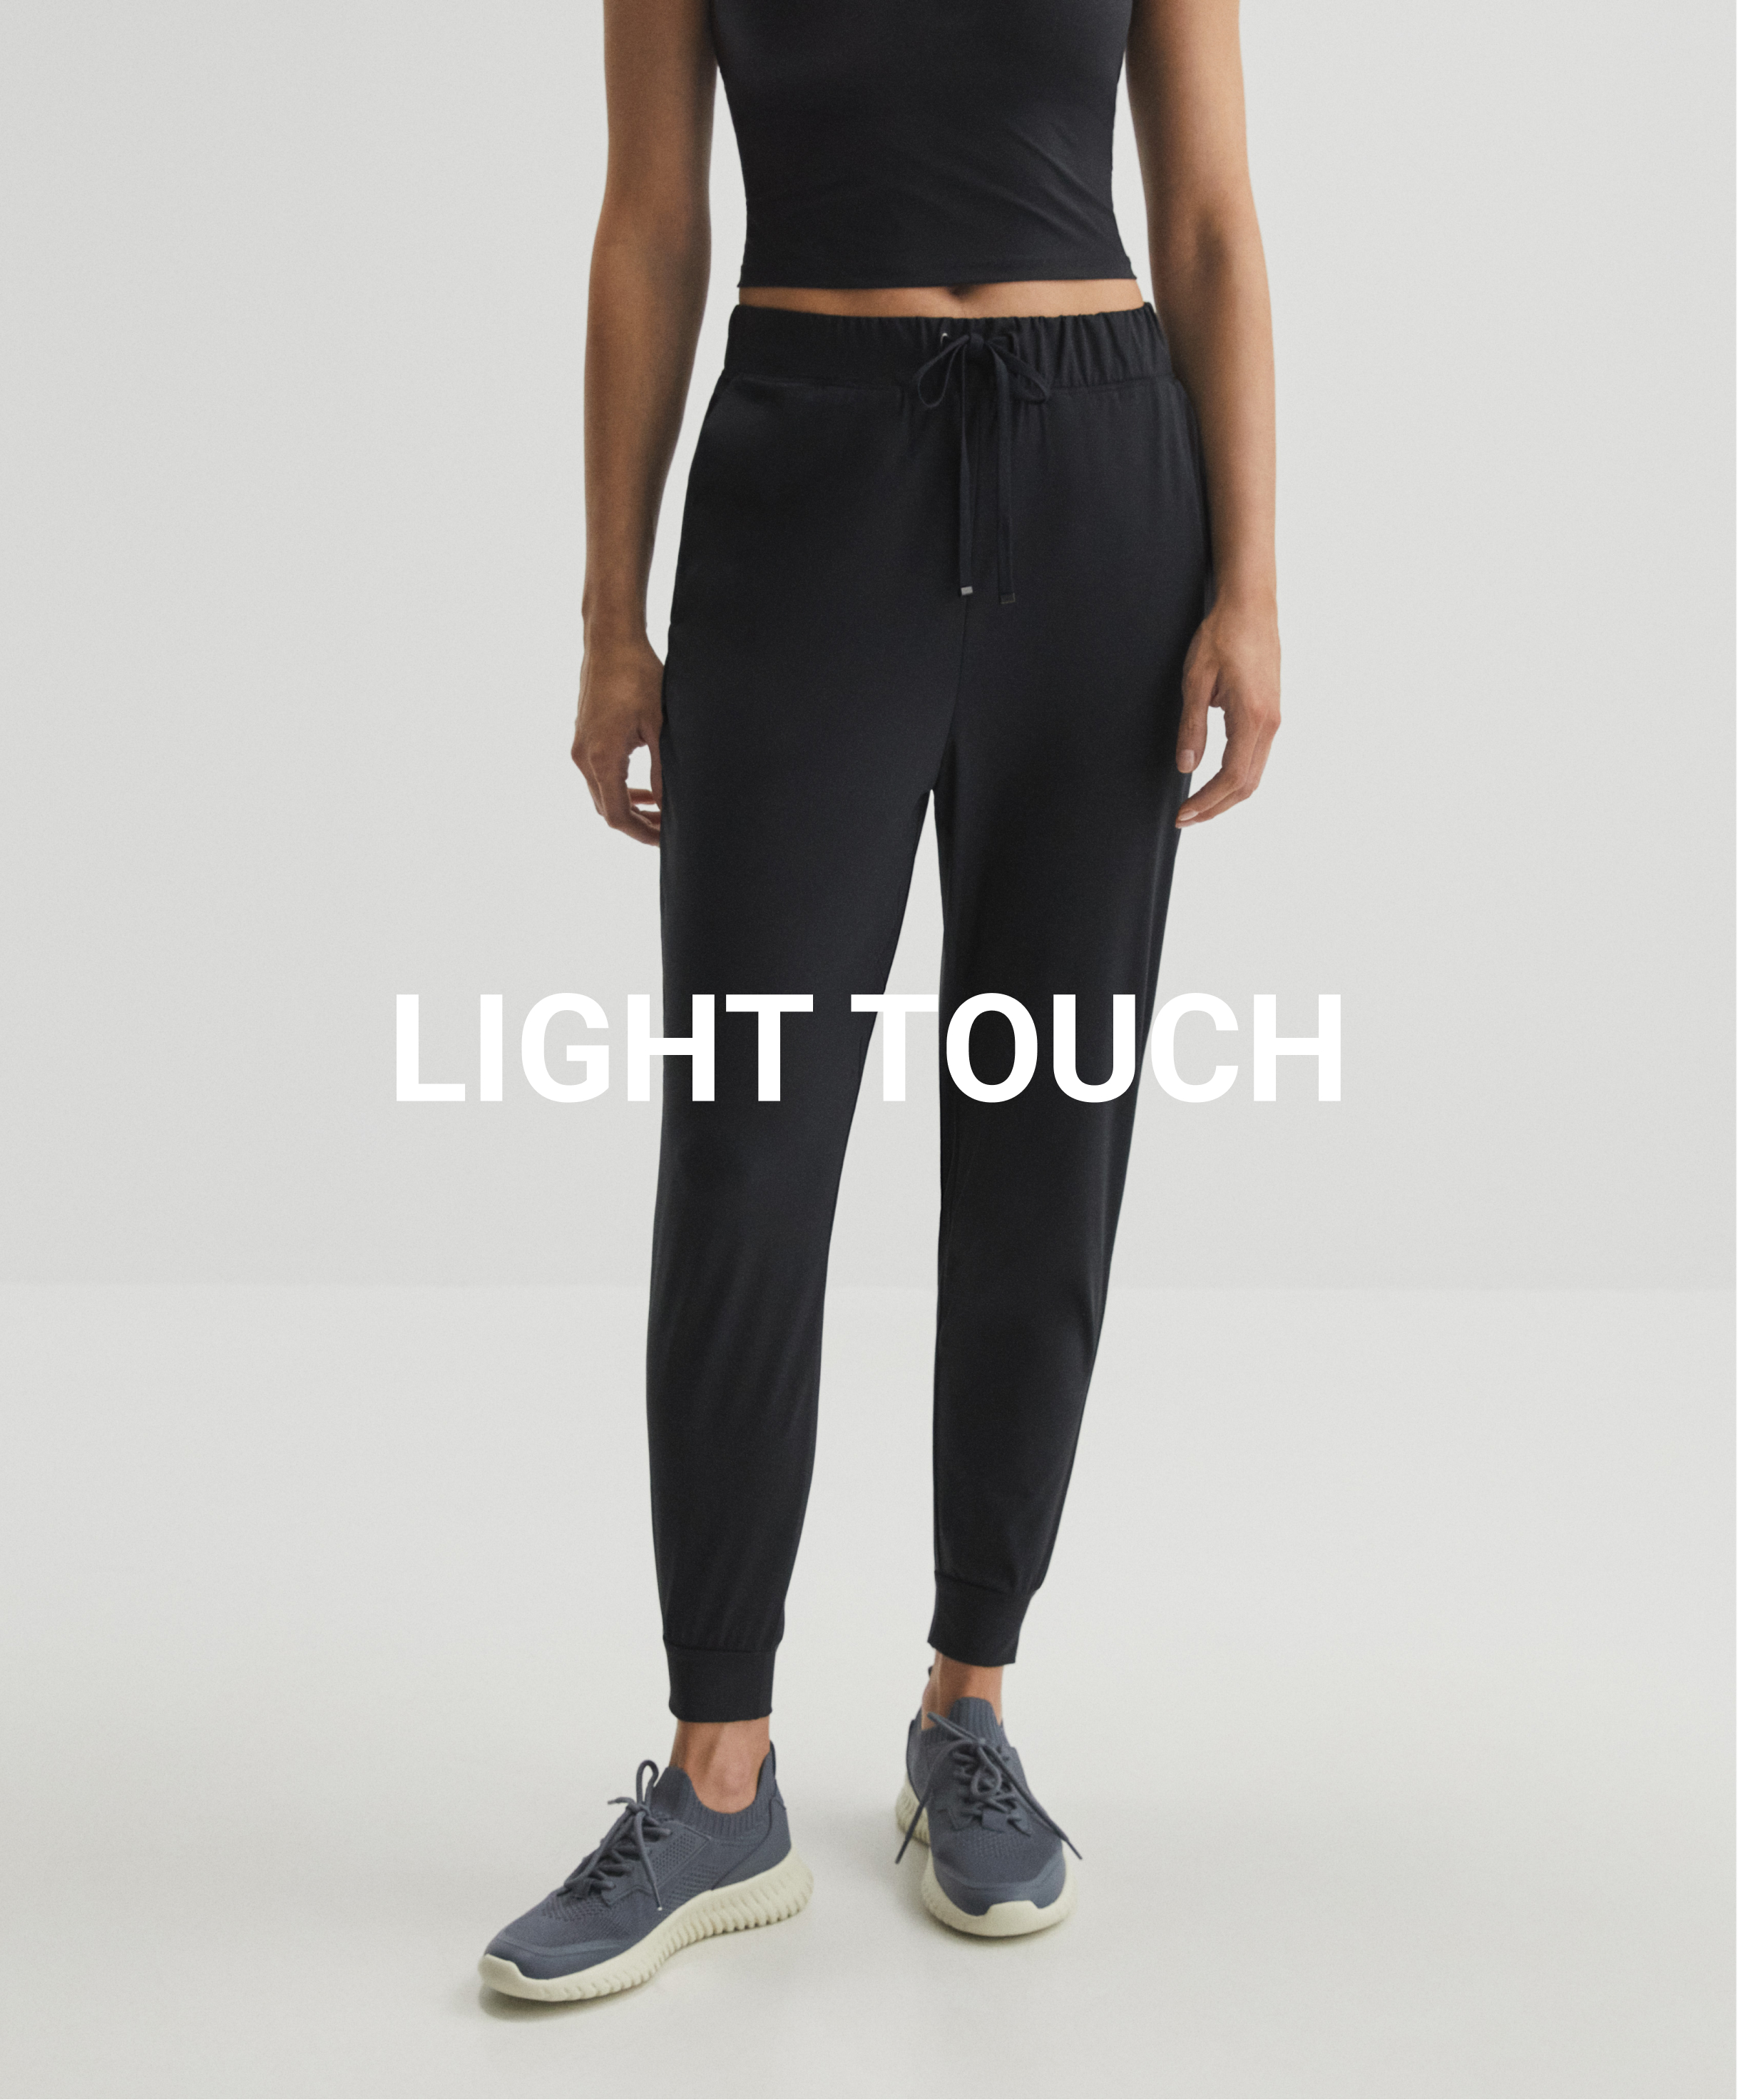 Pantalon de jogging classic light touch